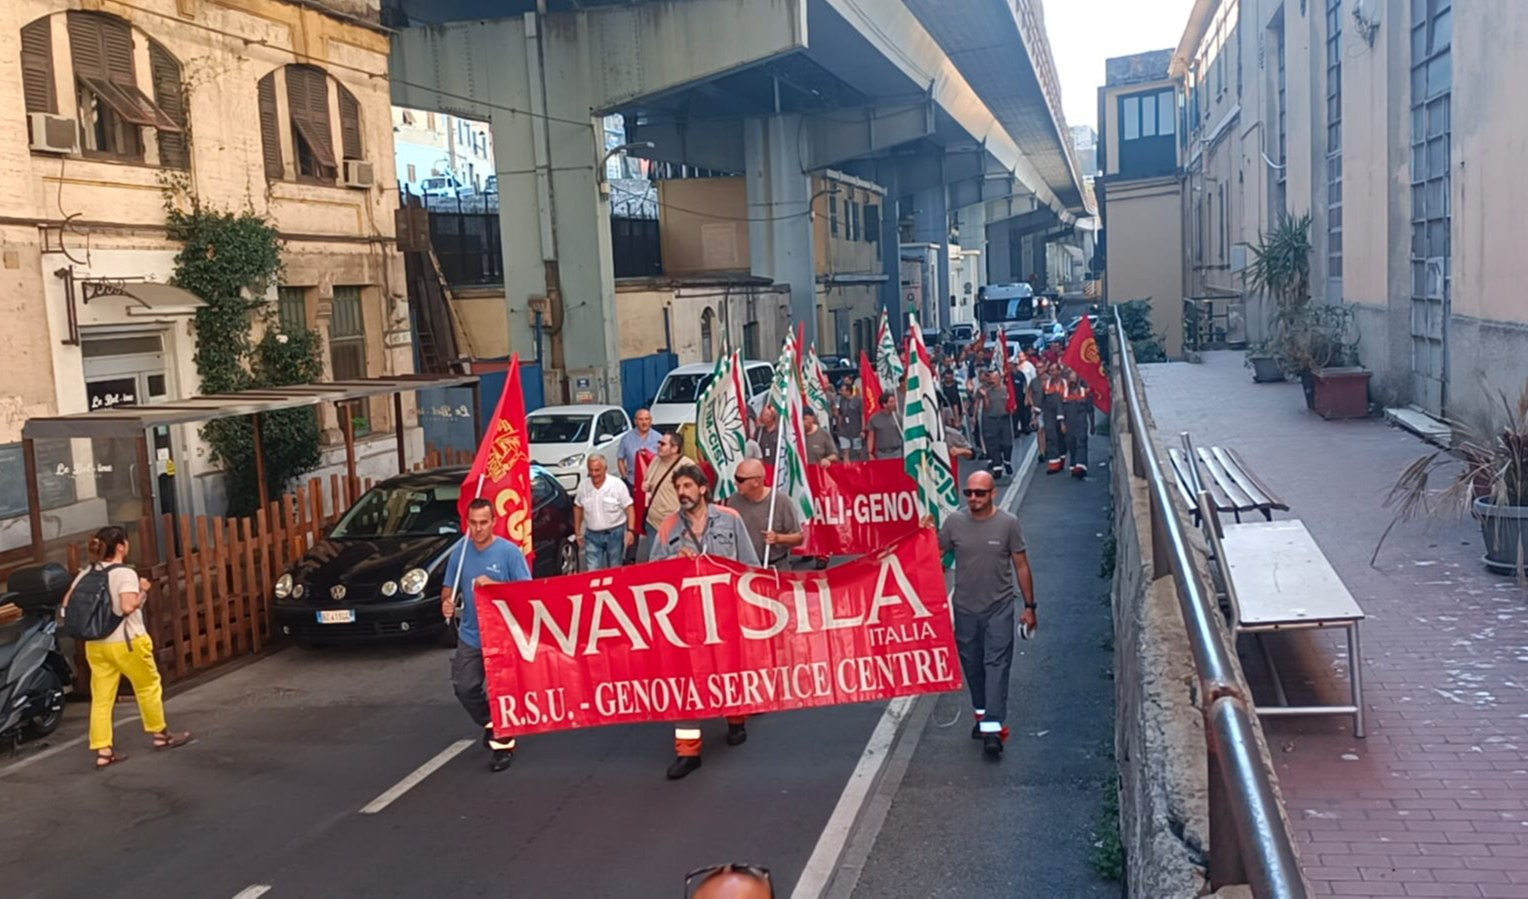 Operai riparazioni navali di Genova in piazza contro chiusura Wartsila di Trieste